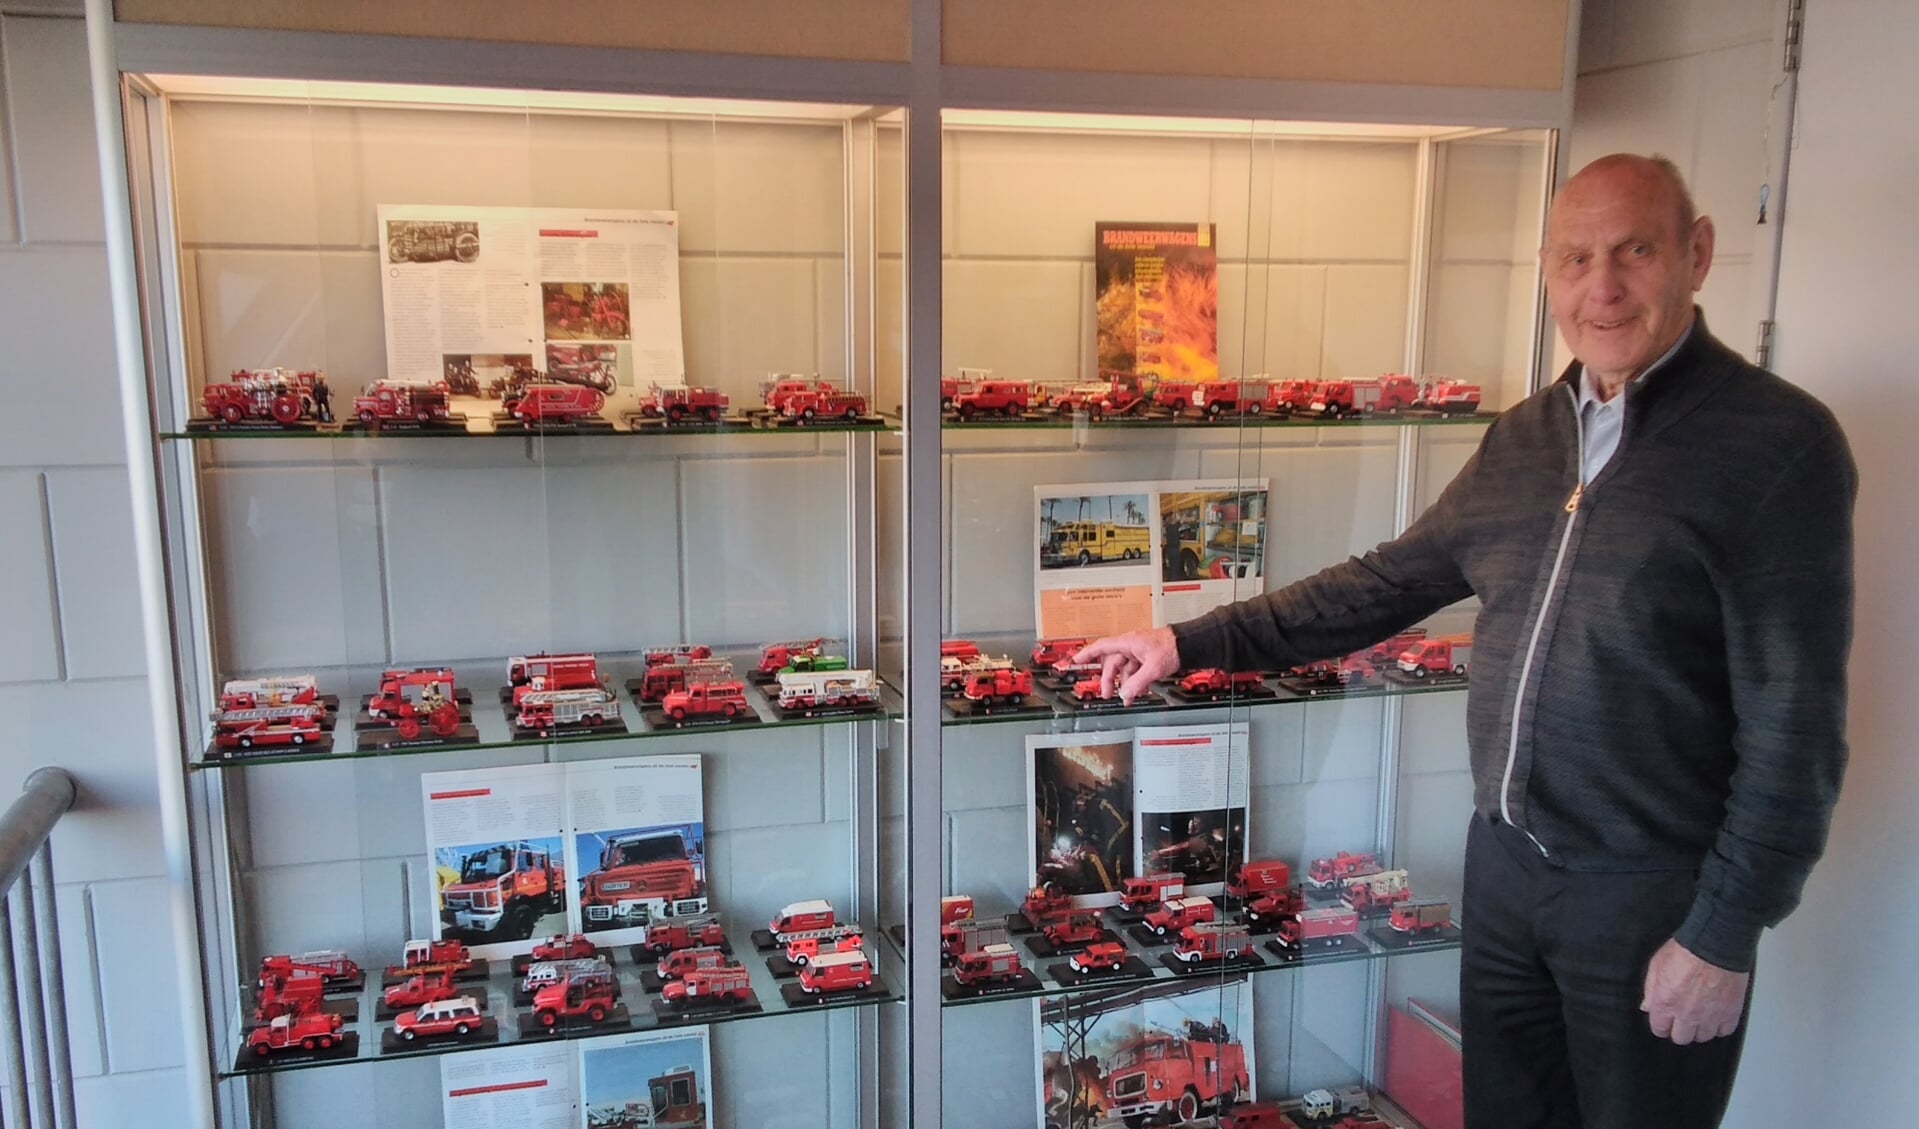 Factuur invoer leef ermee Brandweer miniaturen verzameling overgedragen aan Brandweerpost Houten -  Houtens Nieuws | Nieuws uit de regio Houten